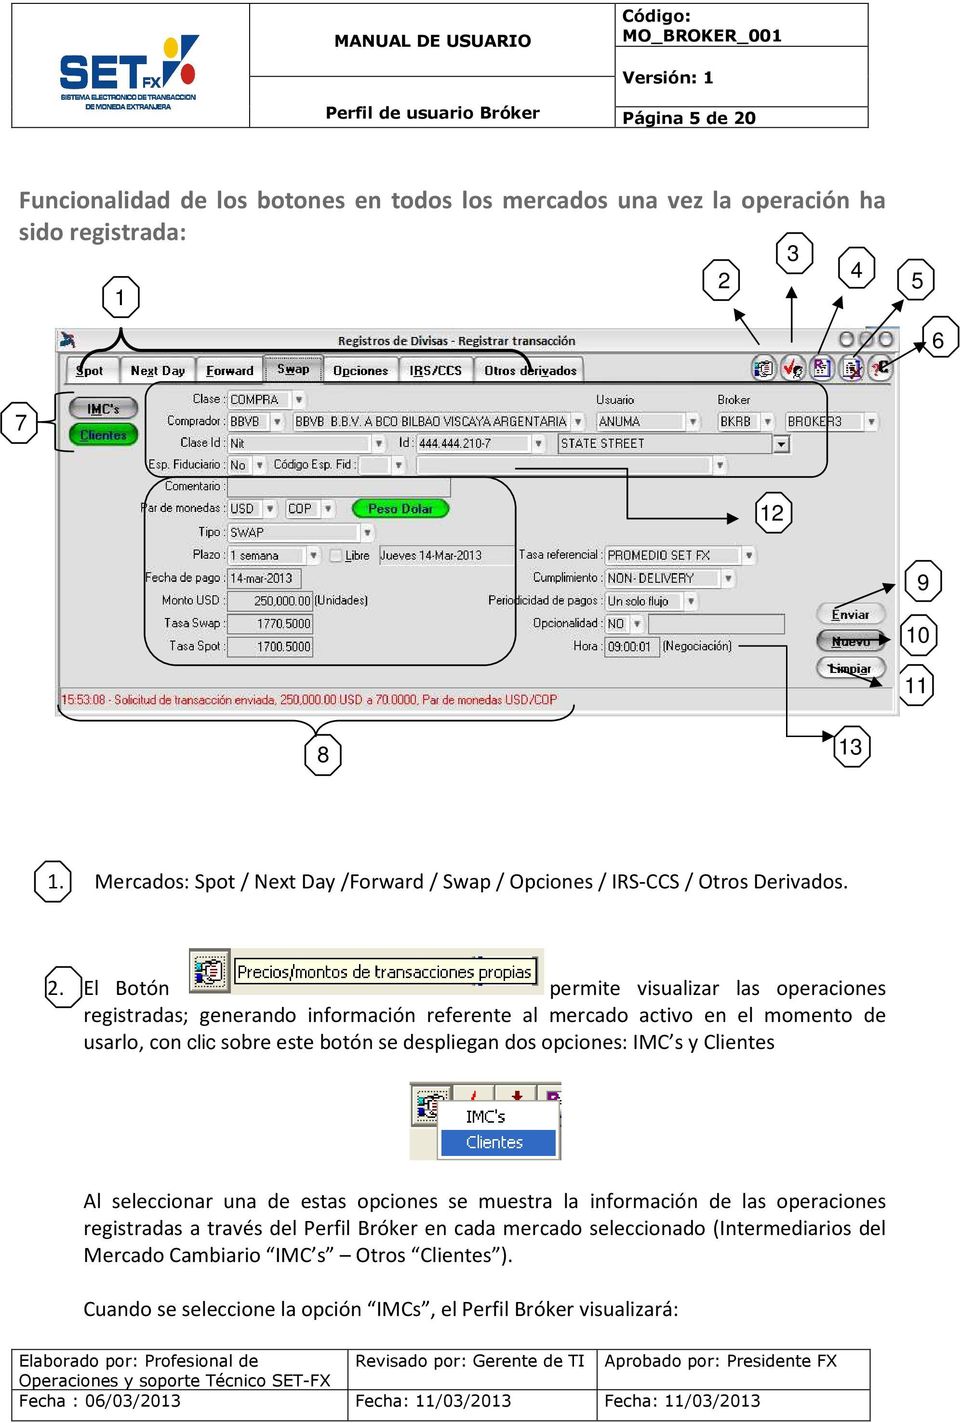 El Botón permite visualizar las operaciones registradas; generando información referente al mercado activo en el momento de usarlo, con clic sobre este botón se despliegan dos